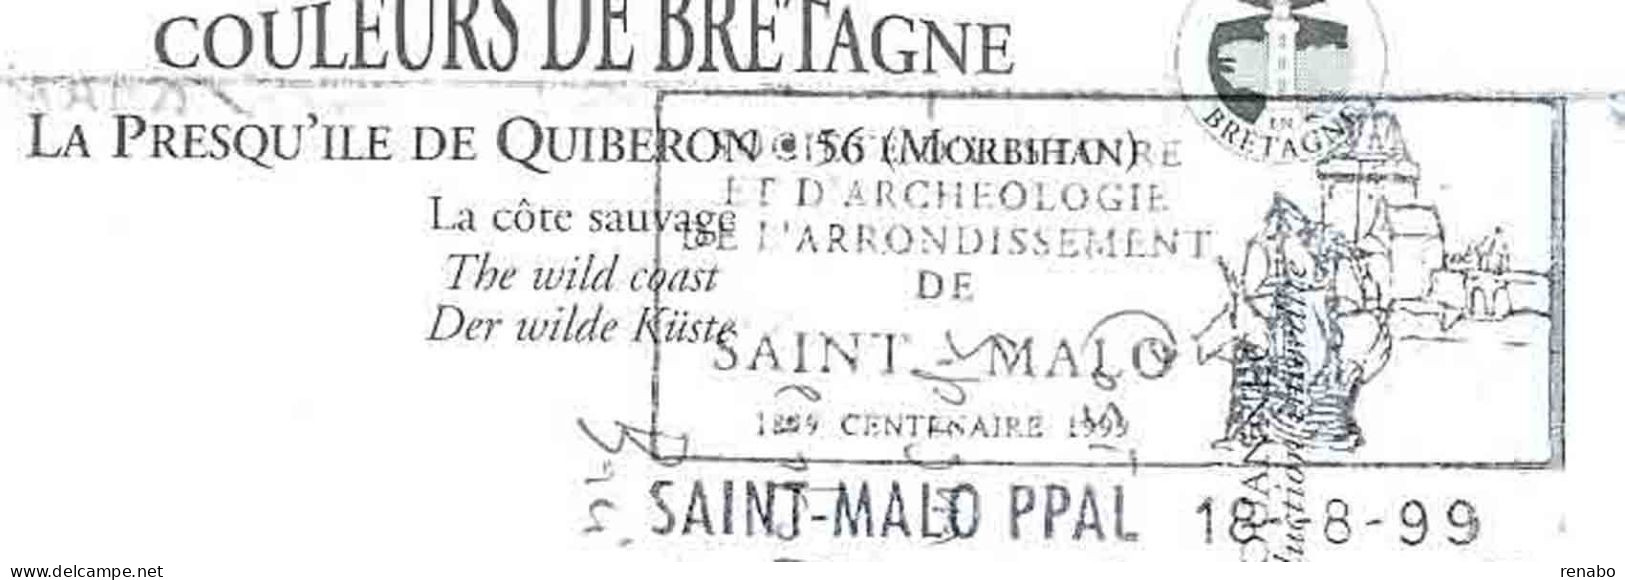 Quiberon 1999;Bretagna,insenature Marine,con Targhetta Di Saint Malo, Cartolina Per L' Italia. - Quiberon